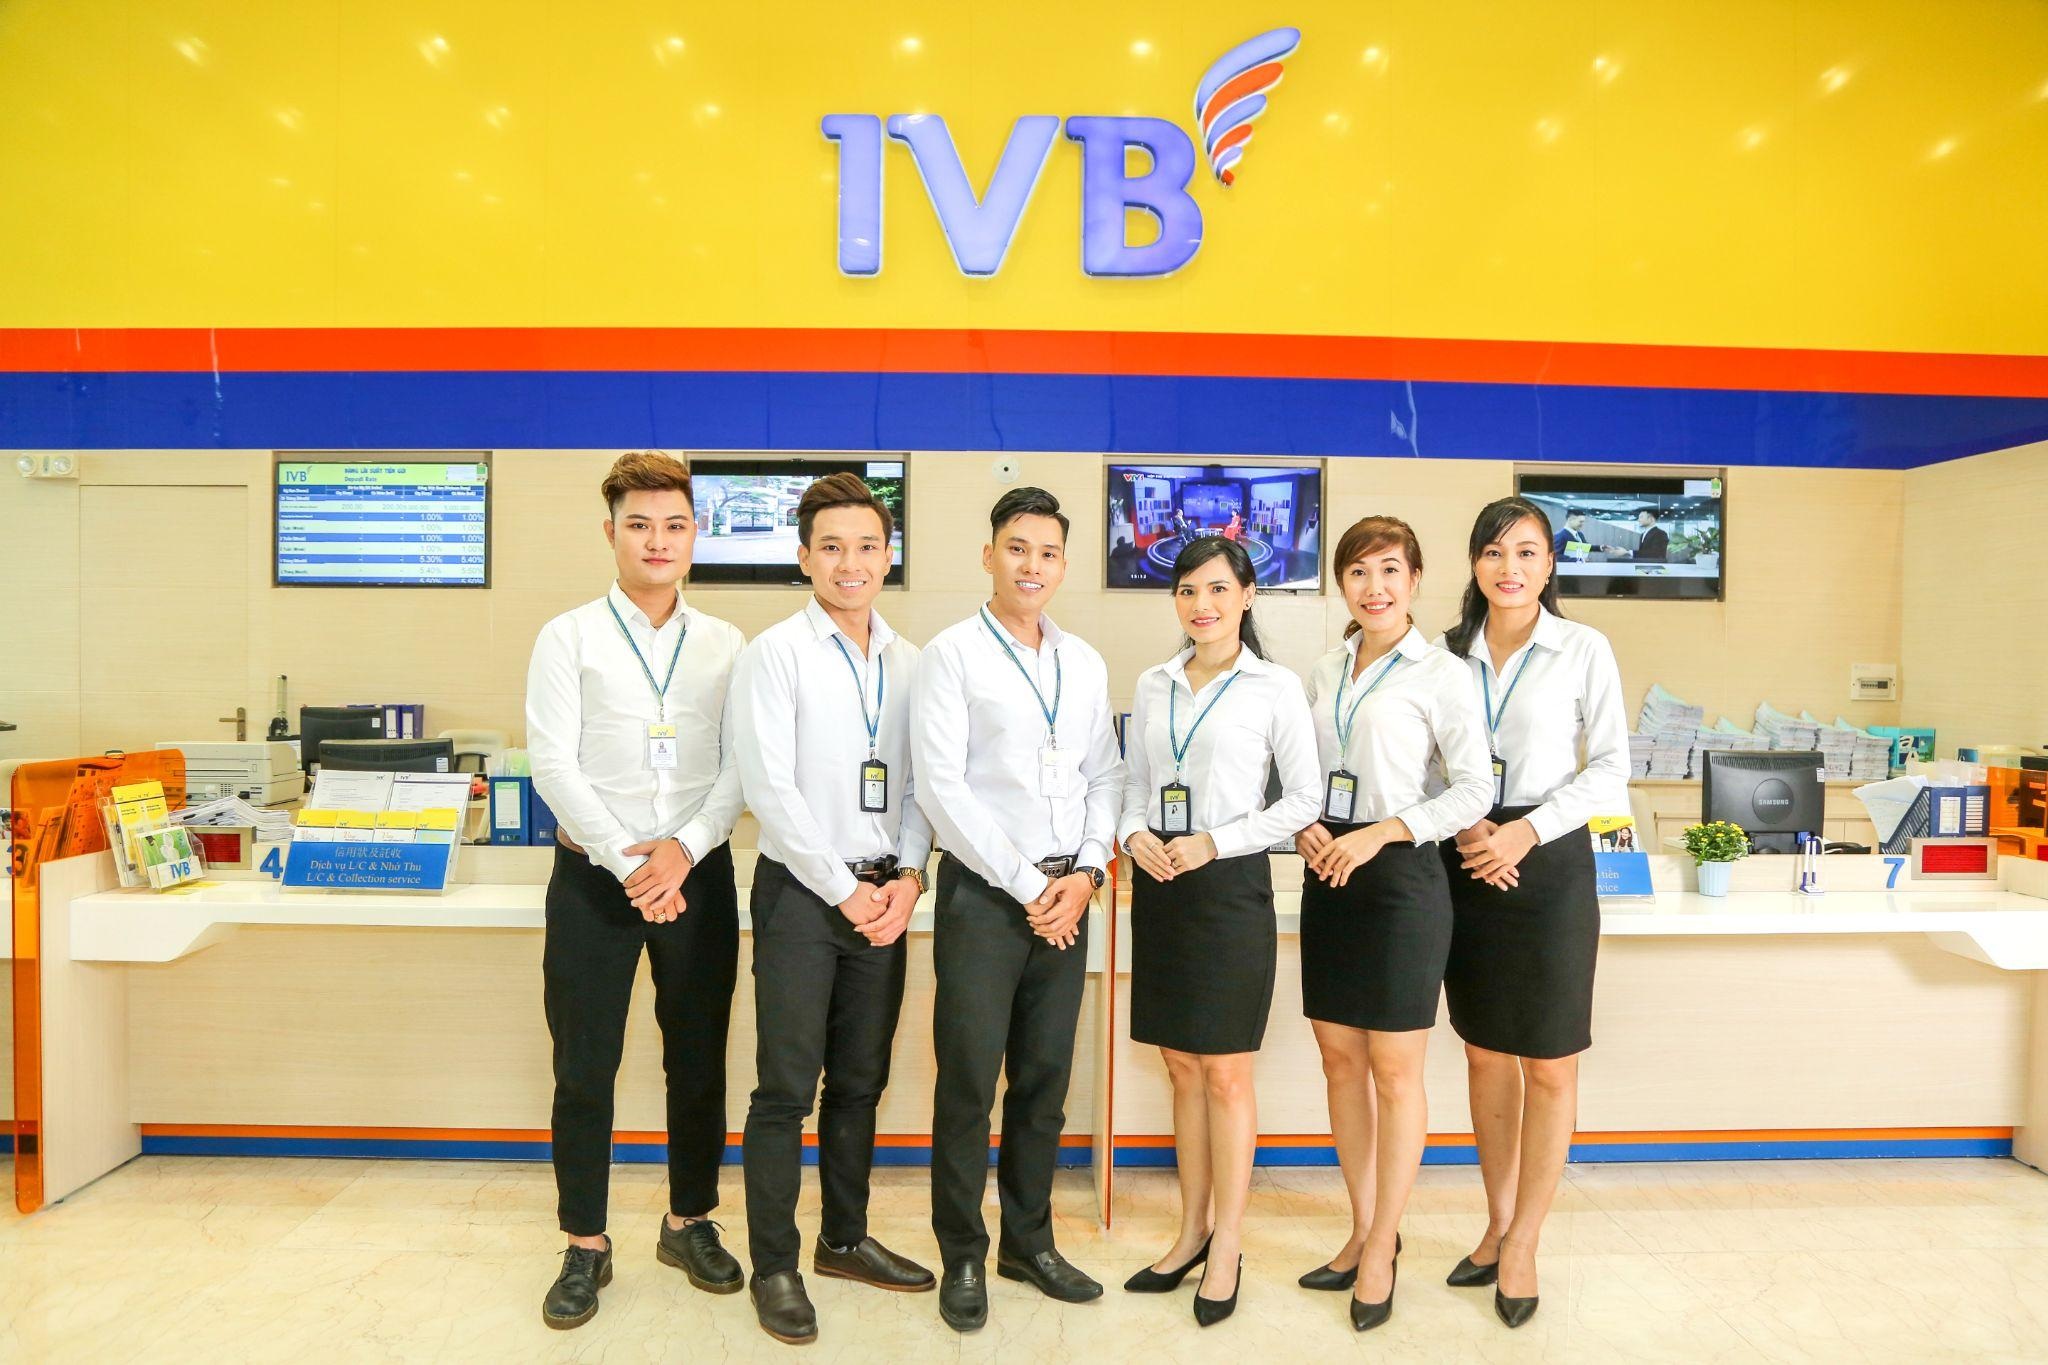 IVB và khát vọng trở thành ngân hàng chuyên biệt hàng đầu Việt Nam - 3